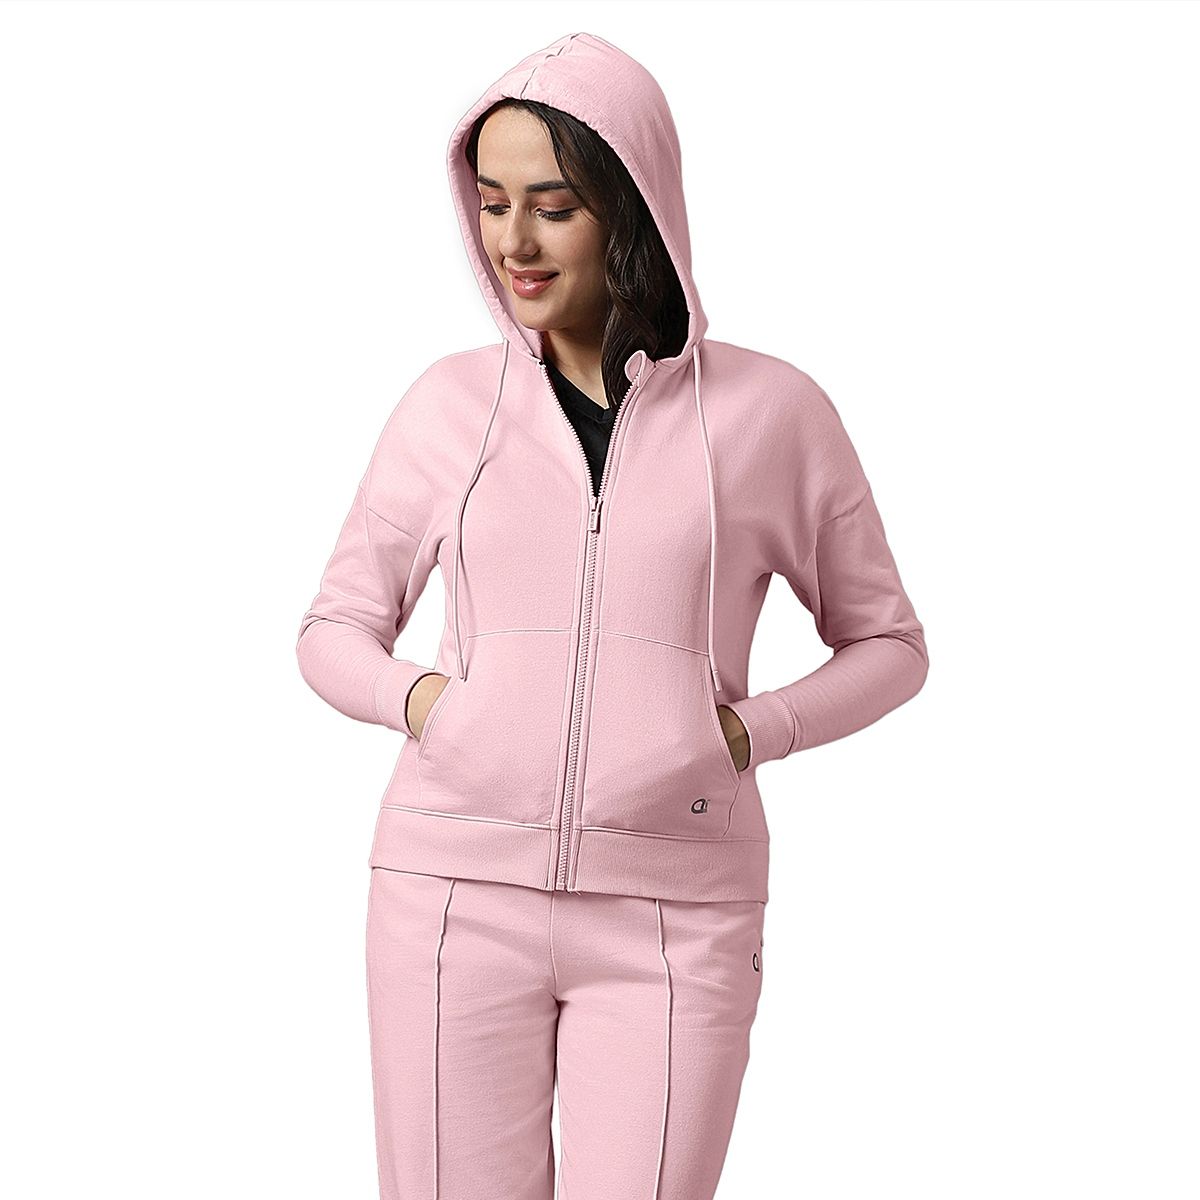 Buy Amante Solid Full Sleeve Essential Fleece Hoodie Online